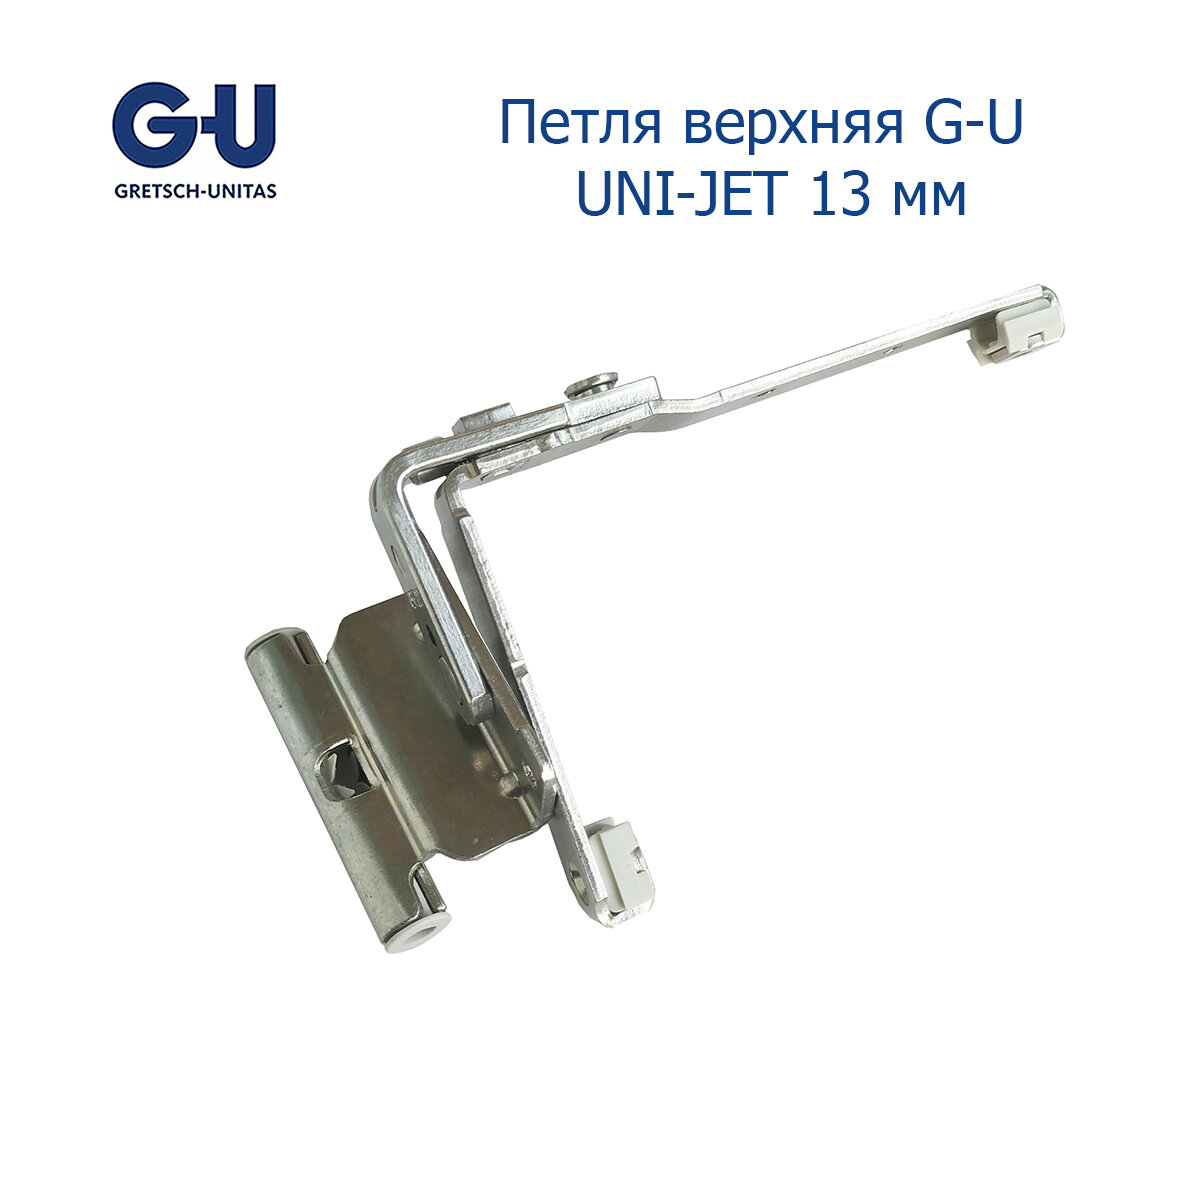 Петля верхняя G-U UNI-JET 12/20-13 для пластиковых окон